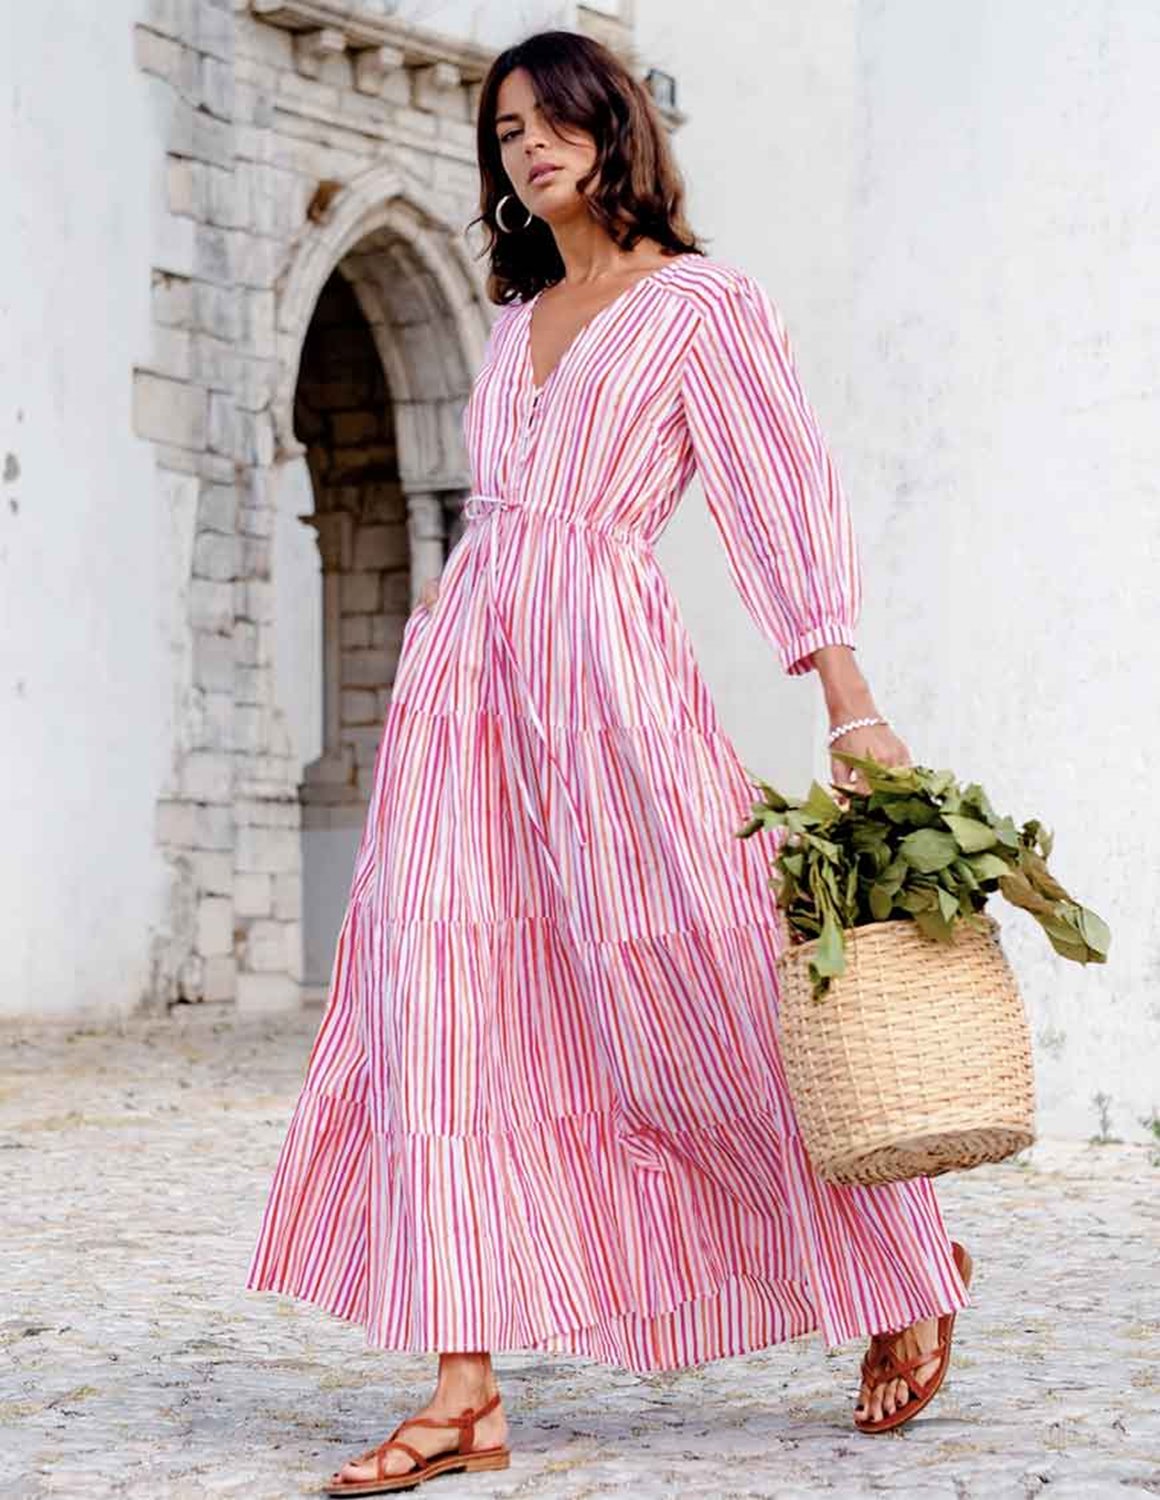 Pink City Prints Maria dress - candy stripe